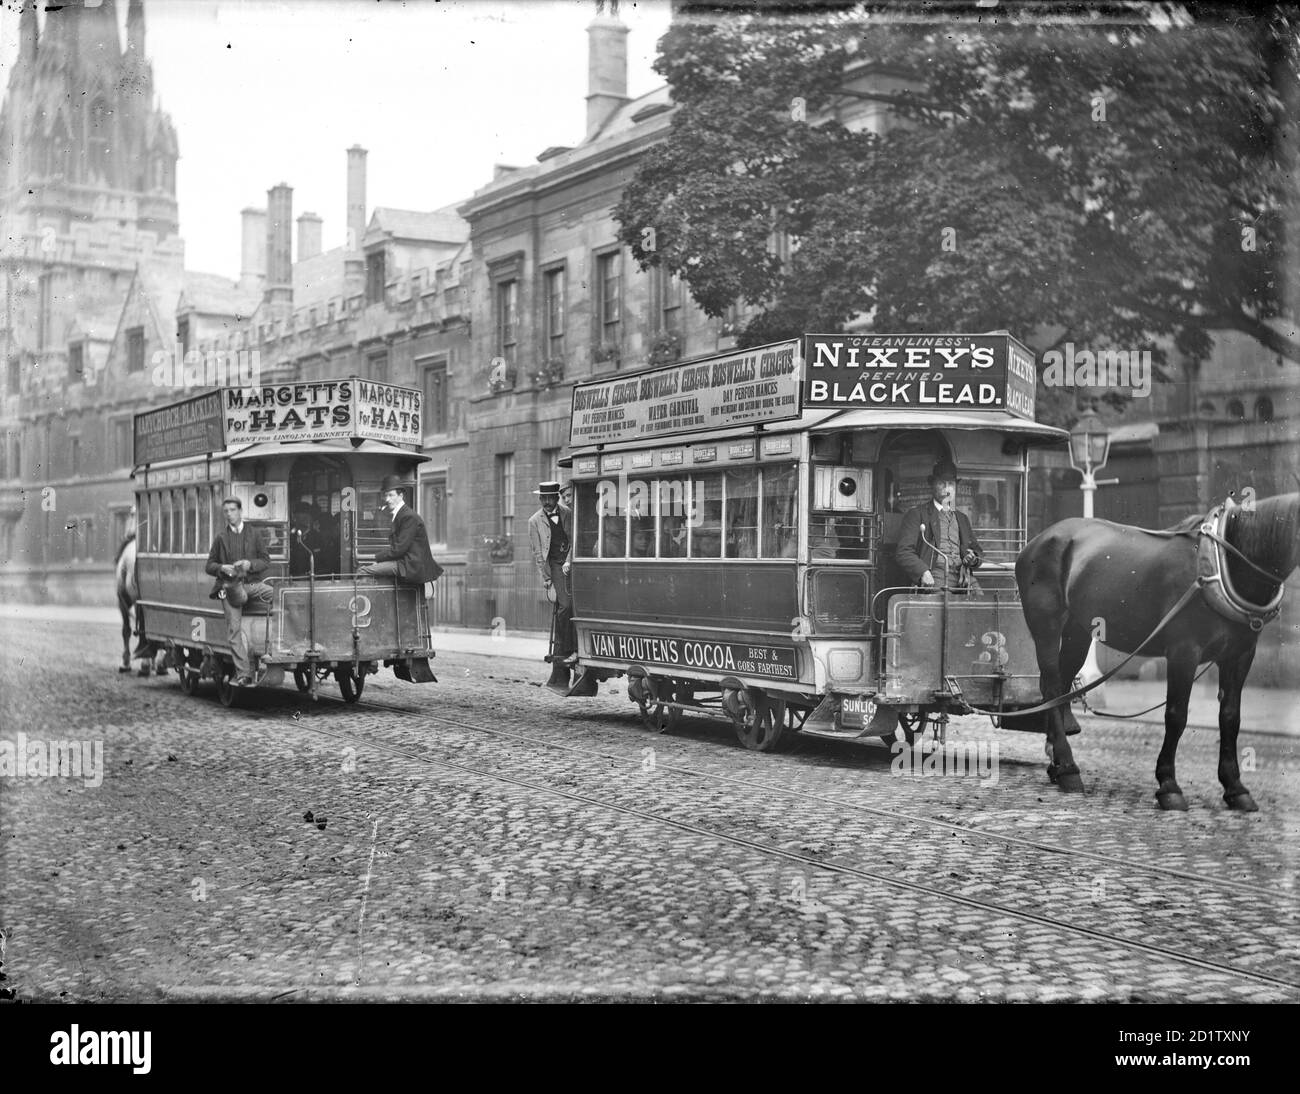 High Street, Oxford, Oxfordshire. Deux tramways tirés par des chevaux passent dans la rue avec des panneaux publicitaires fixés aux toits. Le pont Magdalen a été agrandi en 1899 par le conseil local d'Oxford pour accueillir des tramways tirés par des chevaux, mais par 1913 autobus avaient fait leur apparition. Banque D'Images